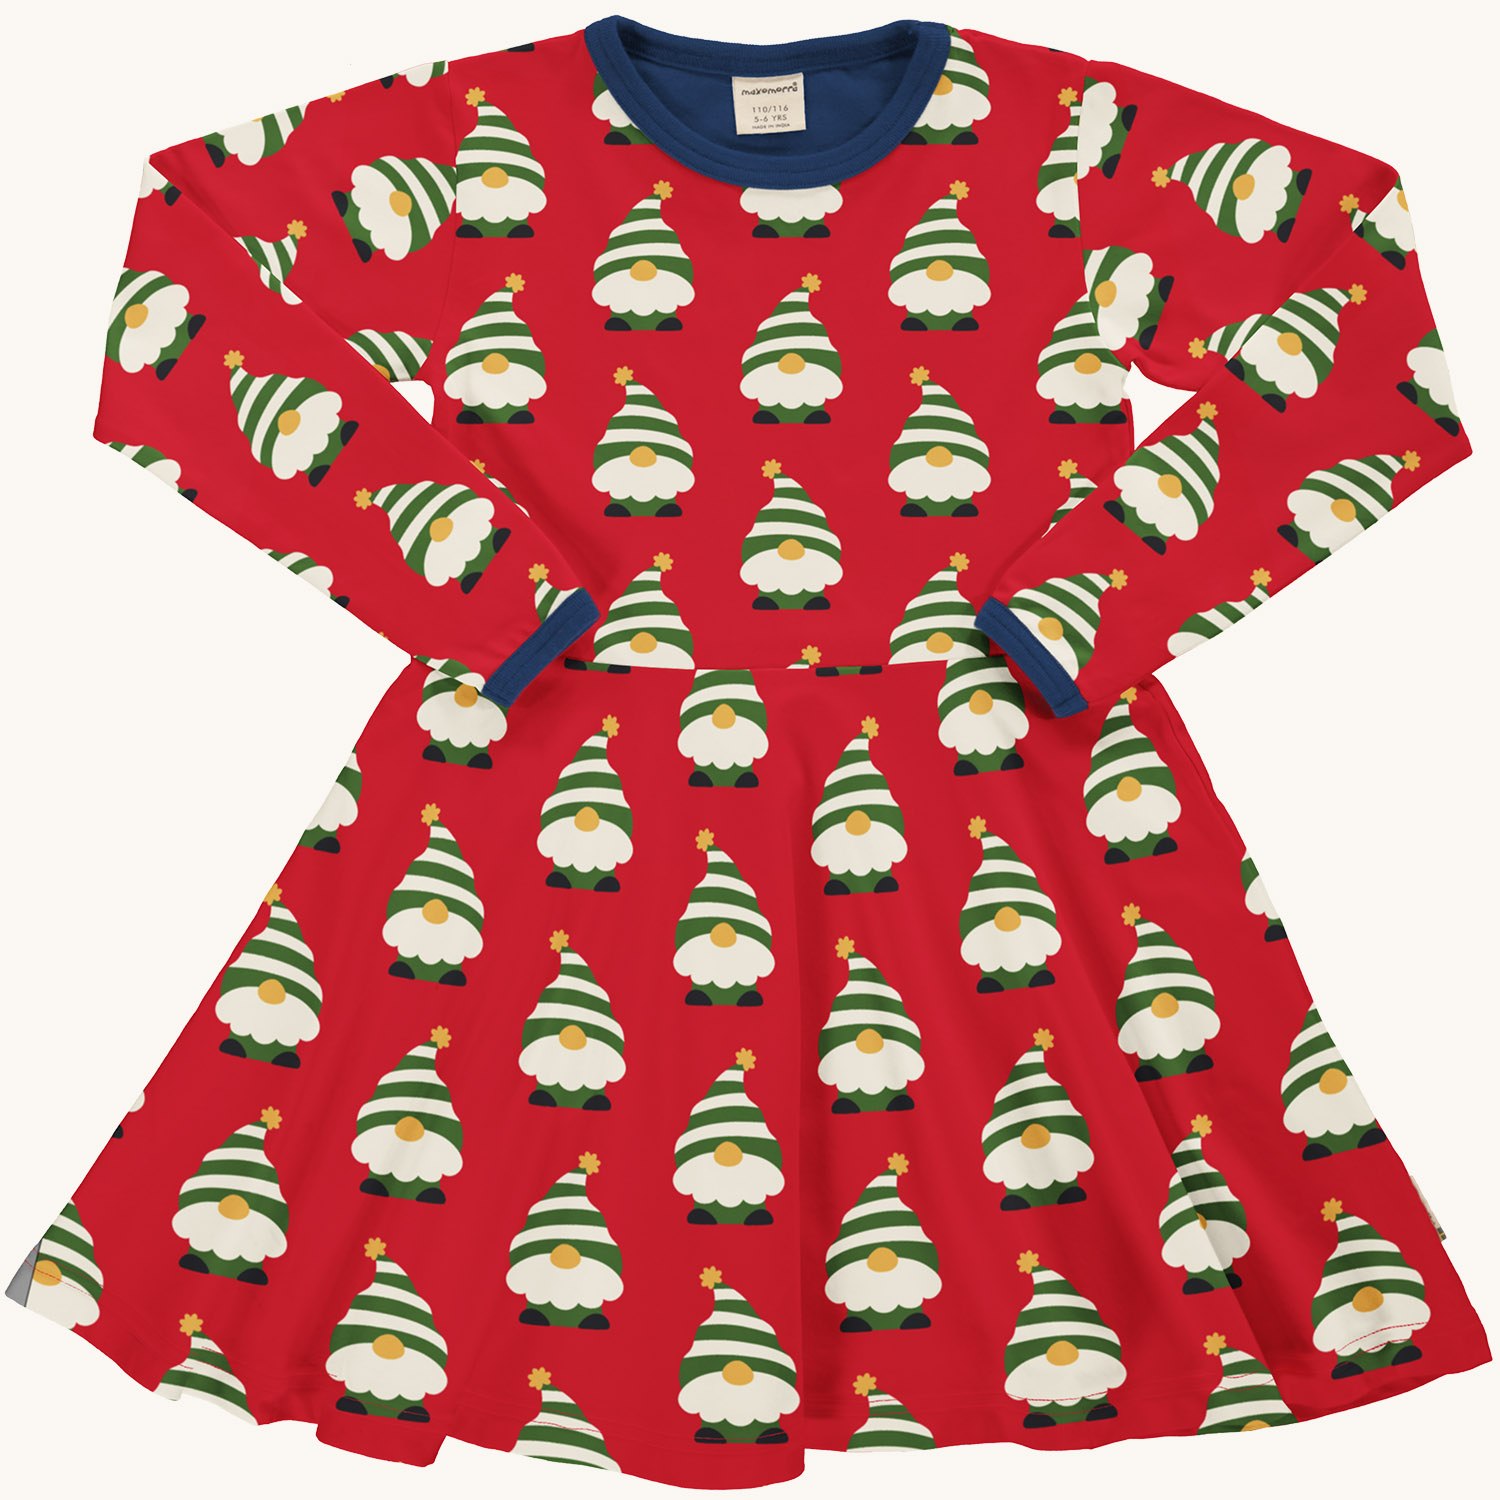 110 Maternity Gown ideas  maternity gowns, maternity, maternity dresses